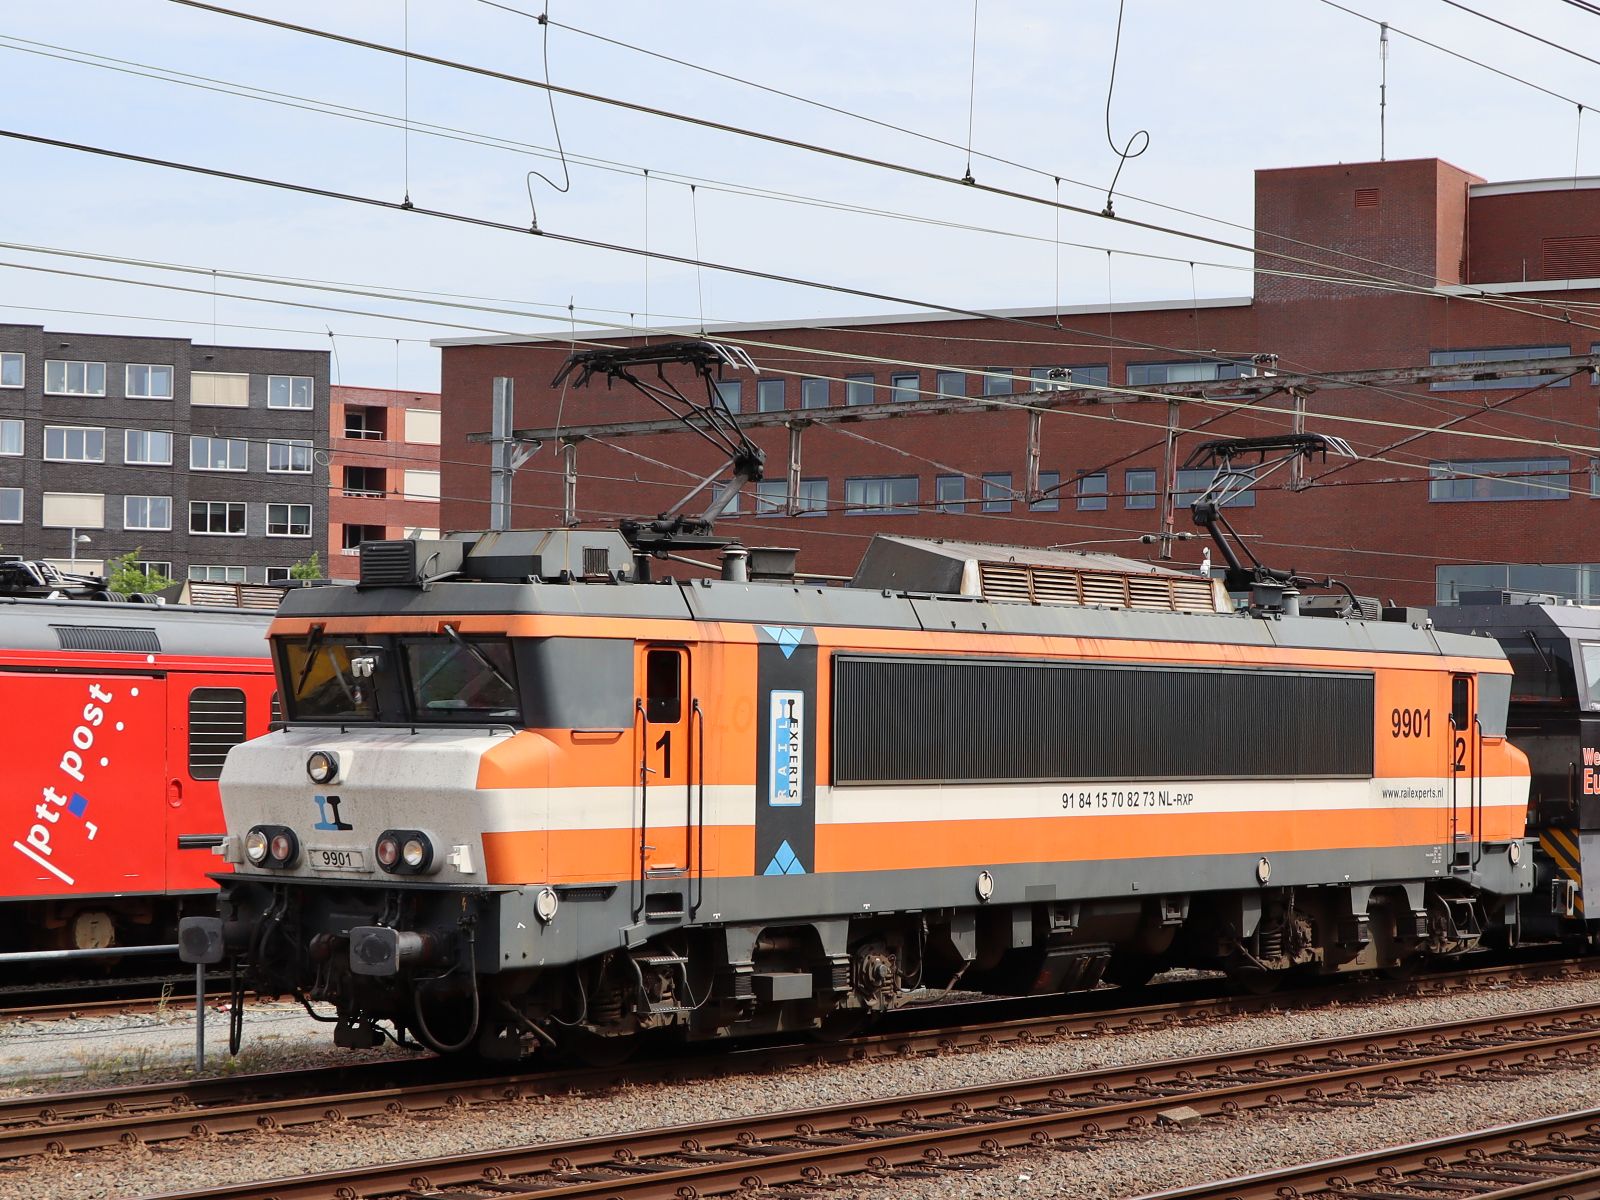 Railexperts Lokomotive 9901 (91 84 1570 827-3 NL-RXP) ex-NS 1627 Bahnhof Amersfoort Centraal 02-08-2022.

Railexperts locomotief 9901 (91 84 1570 827-3 NL-RXP) ex-NS 1627 station Amersfoort Centraal 02-08-2022.